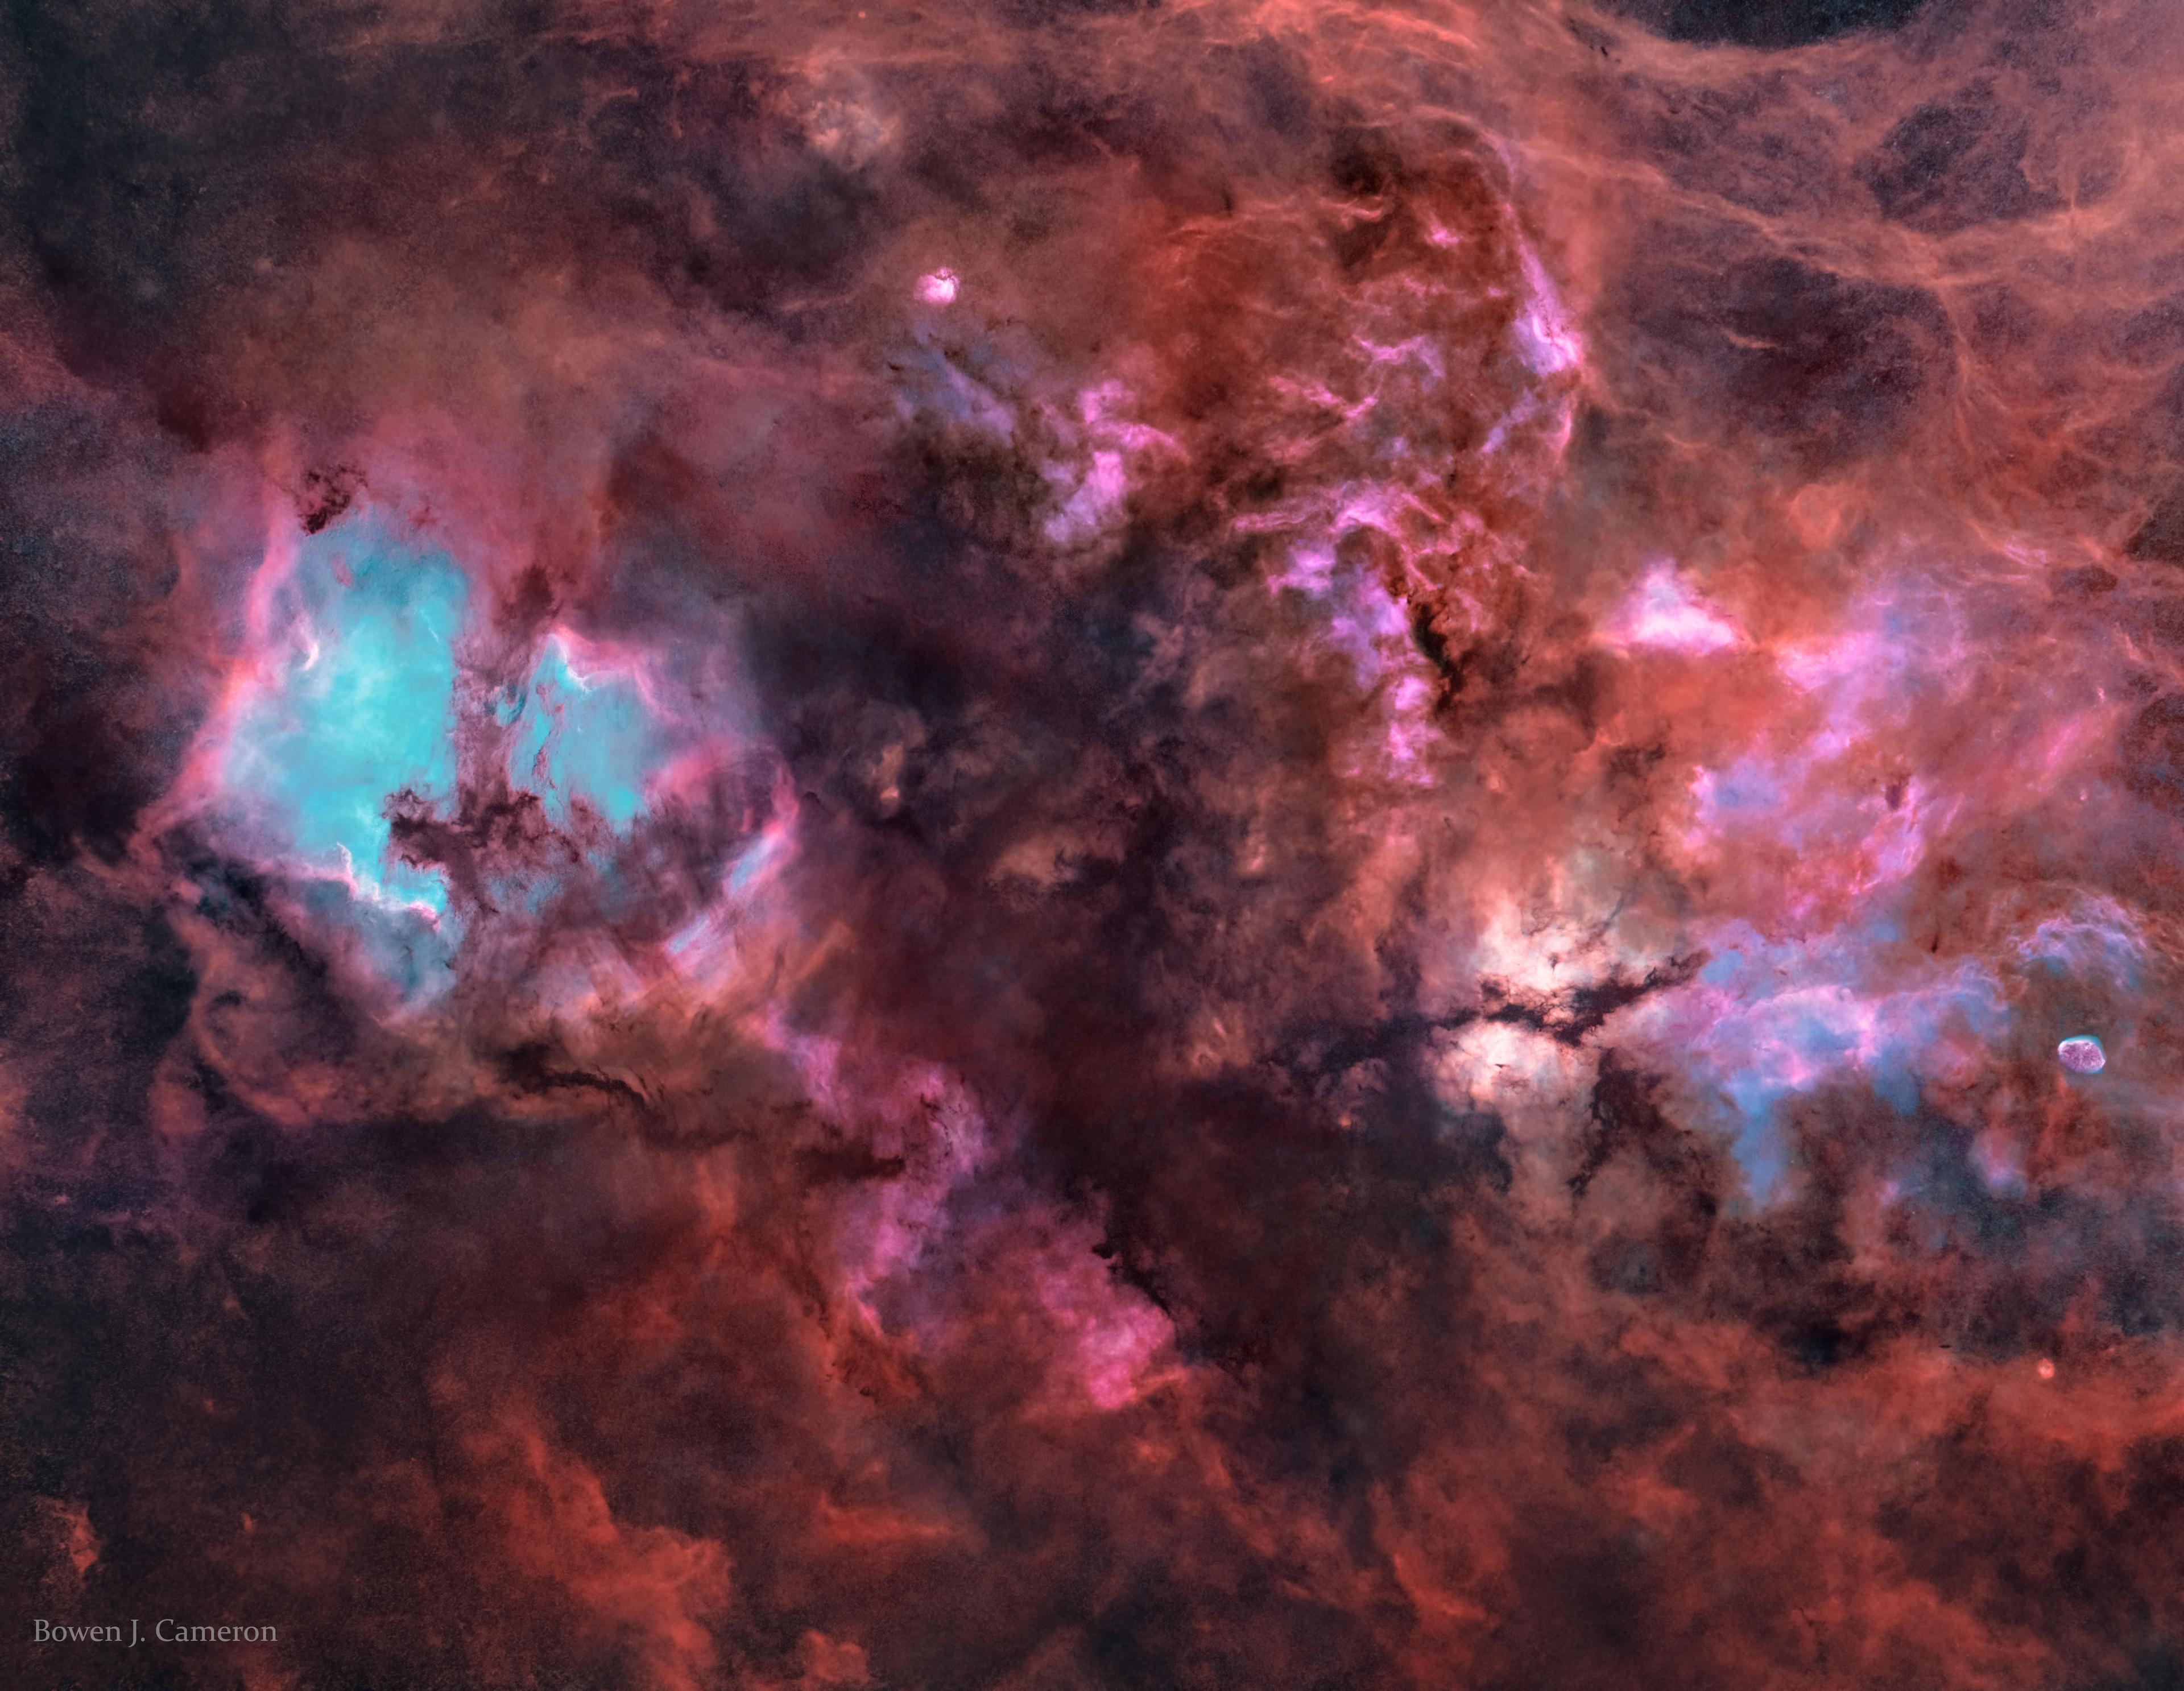 كوكبة الطائر (الدجاجة/Cygnus) بدون نجوم: صورة معالجة رقمياً لإزالة نجوم درب التبانة التي كانت تظهر بشكل نقط بين الكاميرا والسديم. الصورة الممتدّة على عرض 12 درجة شمال كوكبة الطائر تظهر مجموعة معقدة من السحب الغازية على طول مستويّ مجرتنا درب التبّانة.